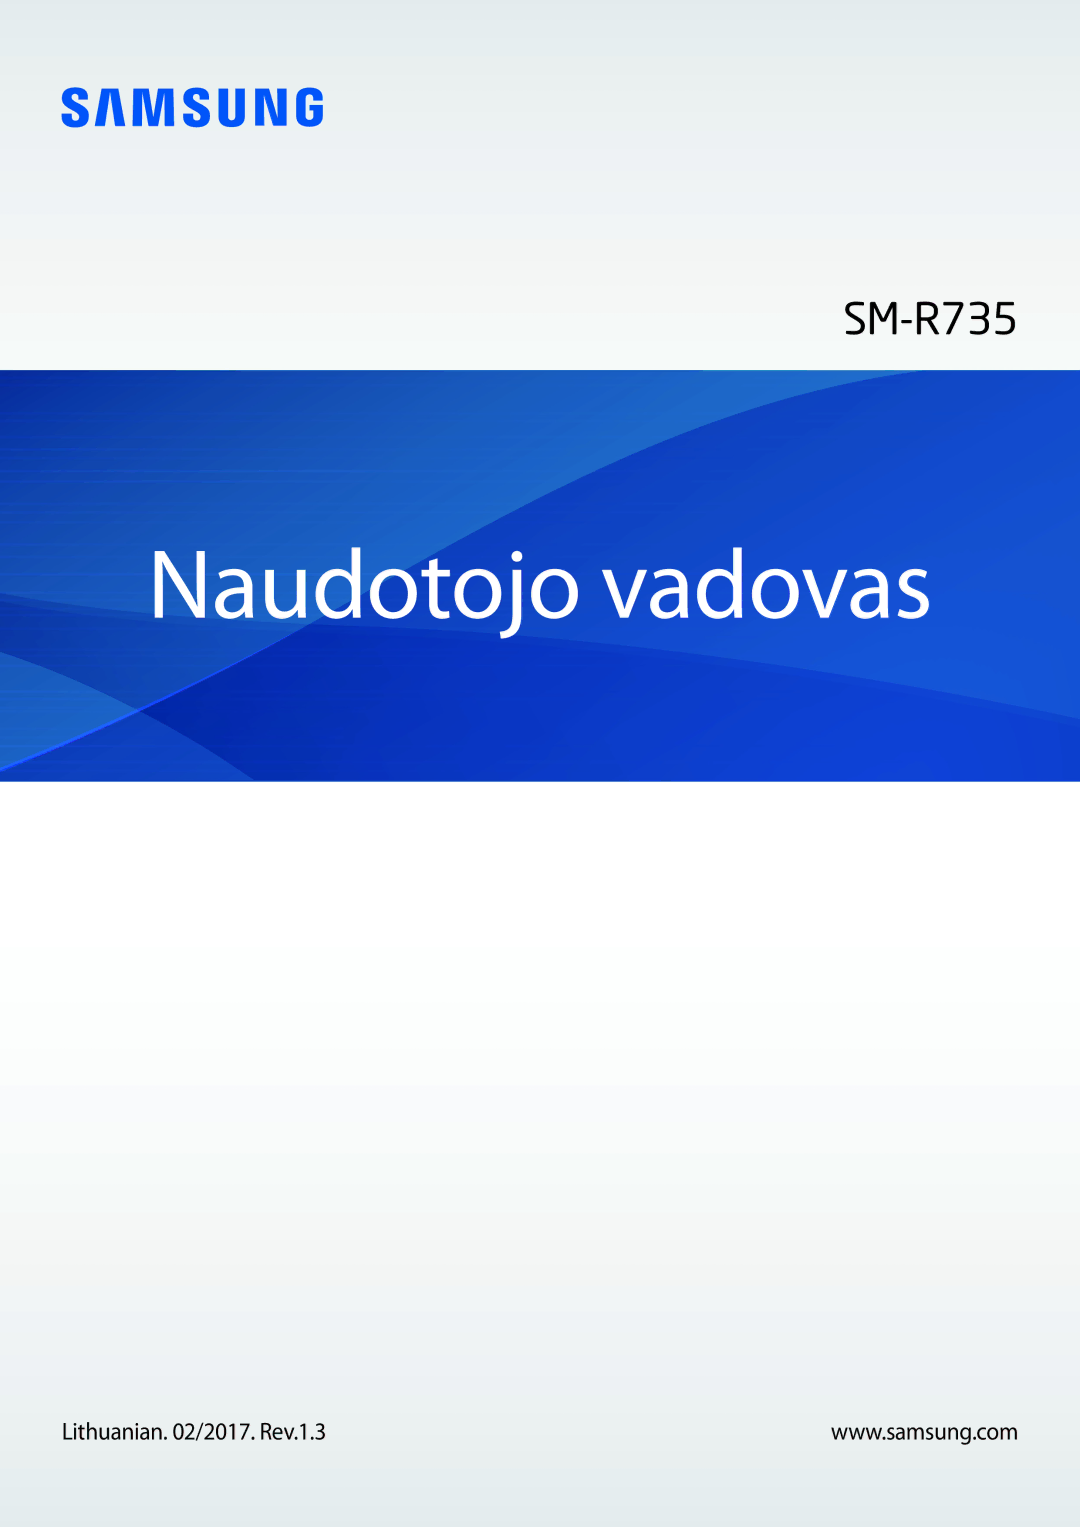 Samsung SM-R7350ZKOEMT manual Naudotojo vadovas, Lithuanian /2017. Rev.1.3 